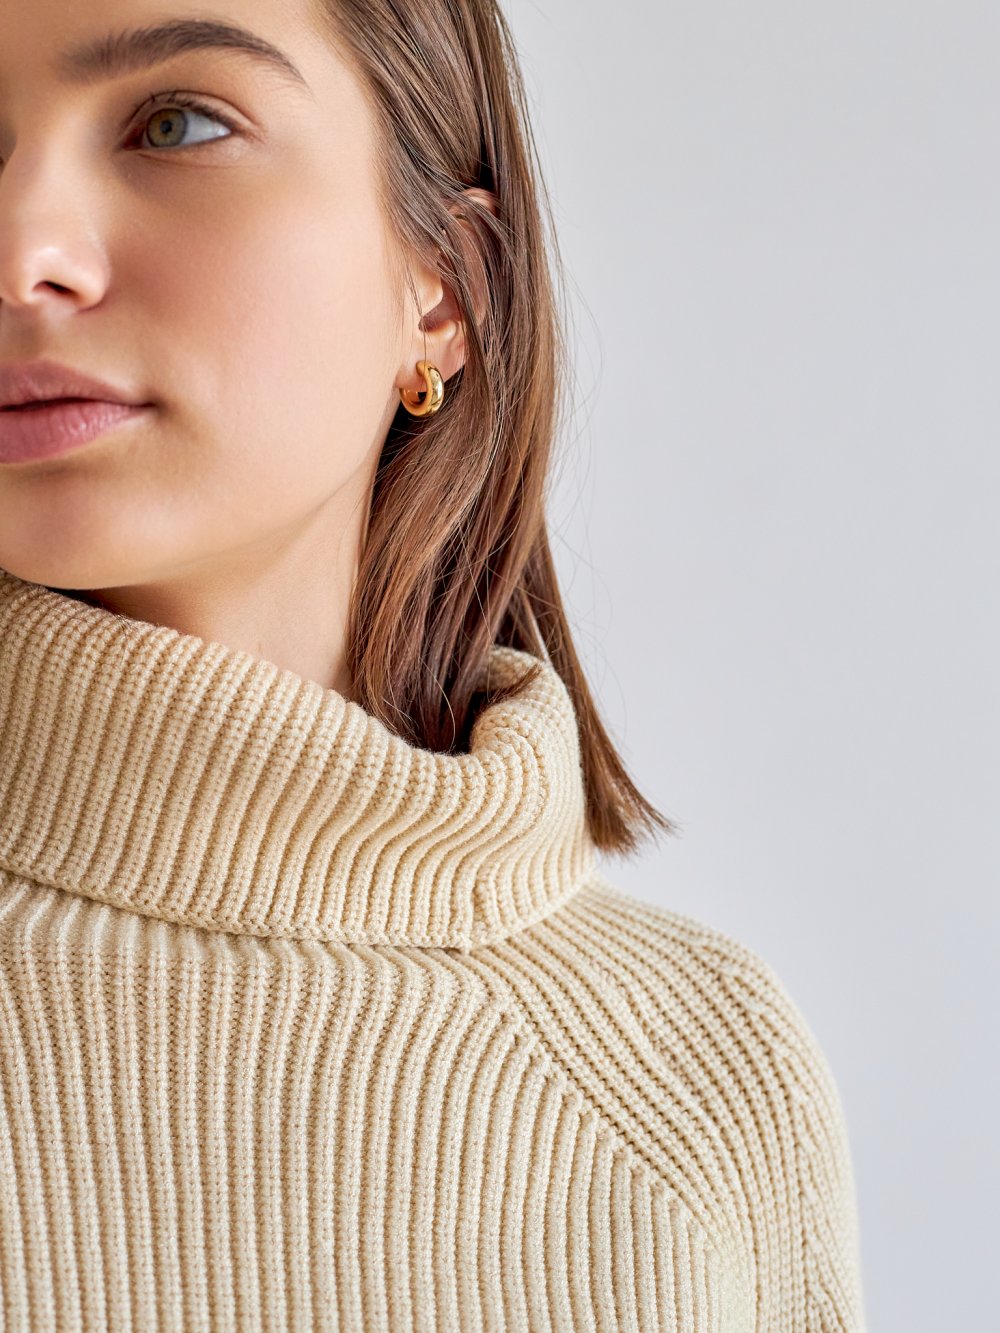 Béžový pletený svetr Lina